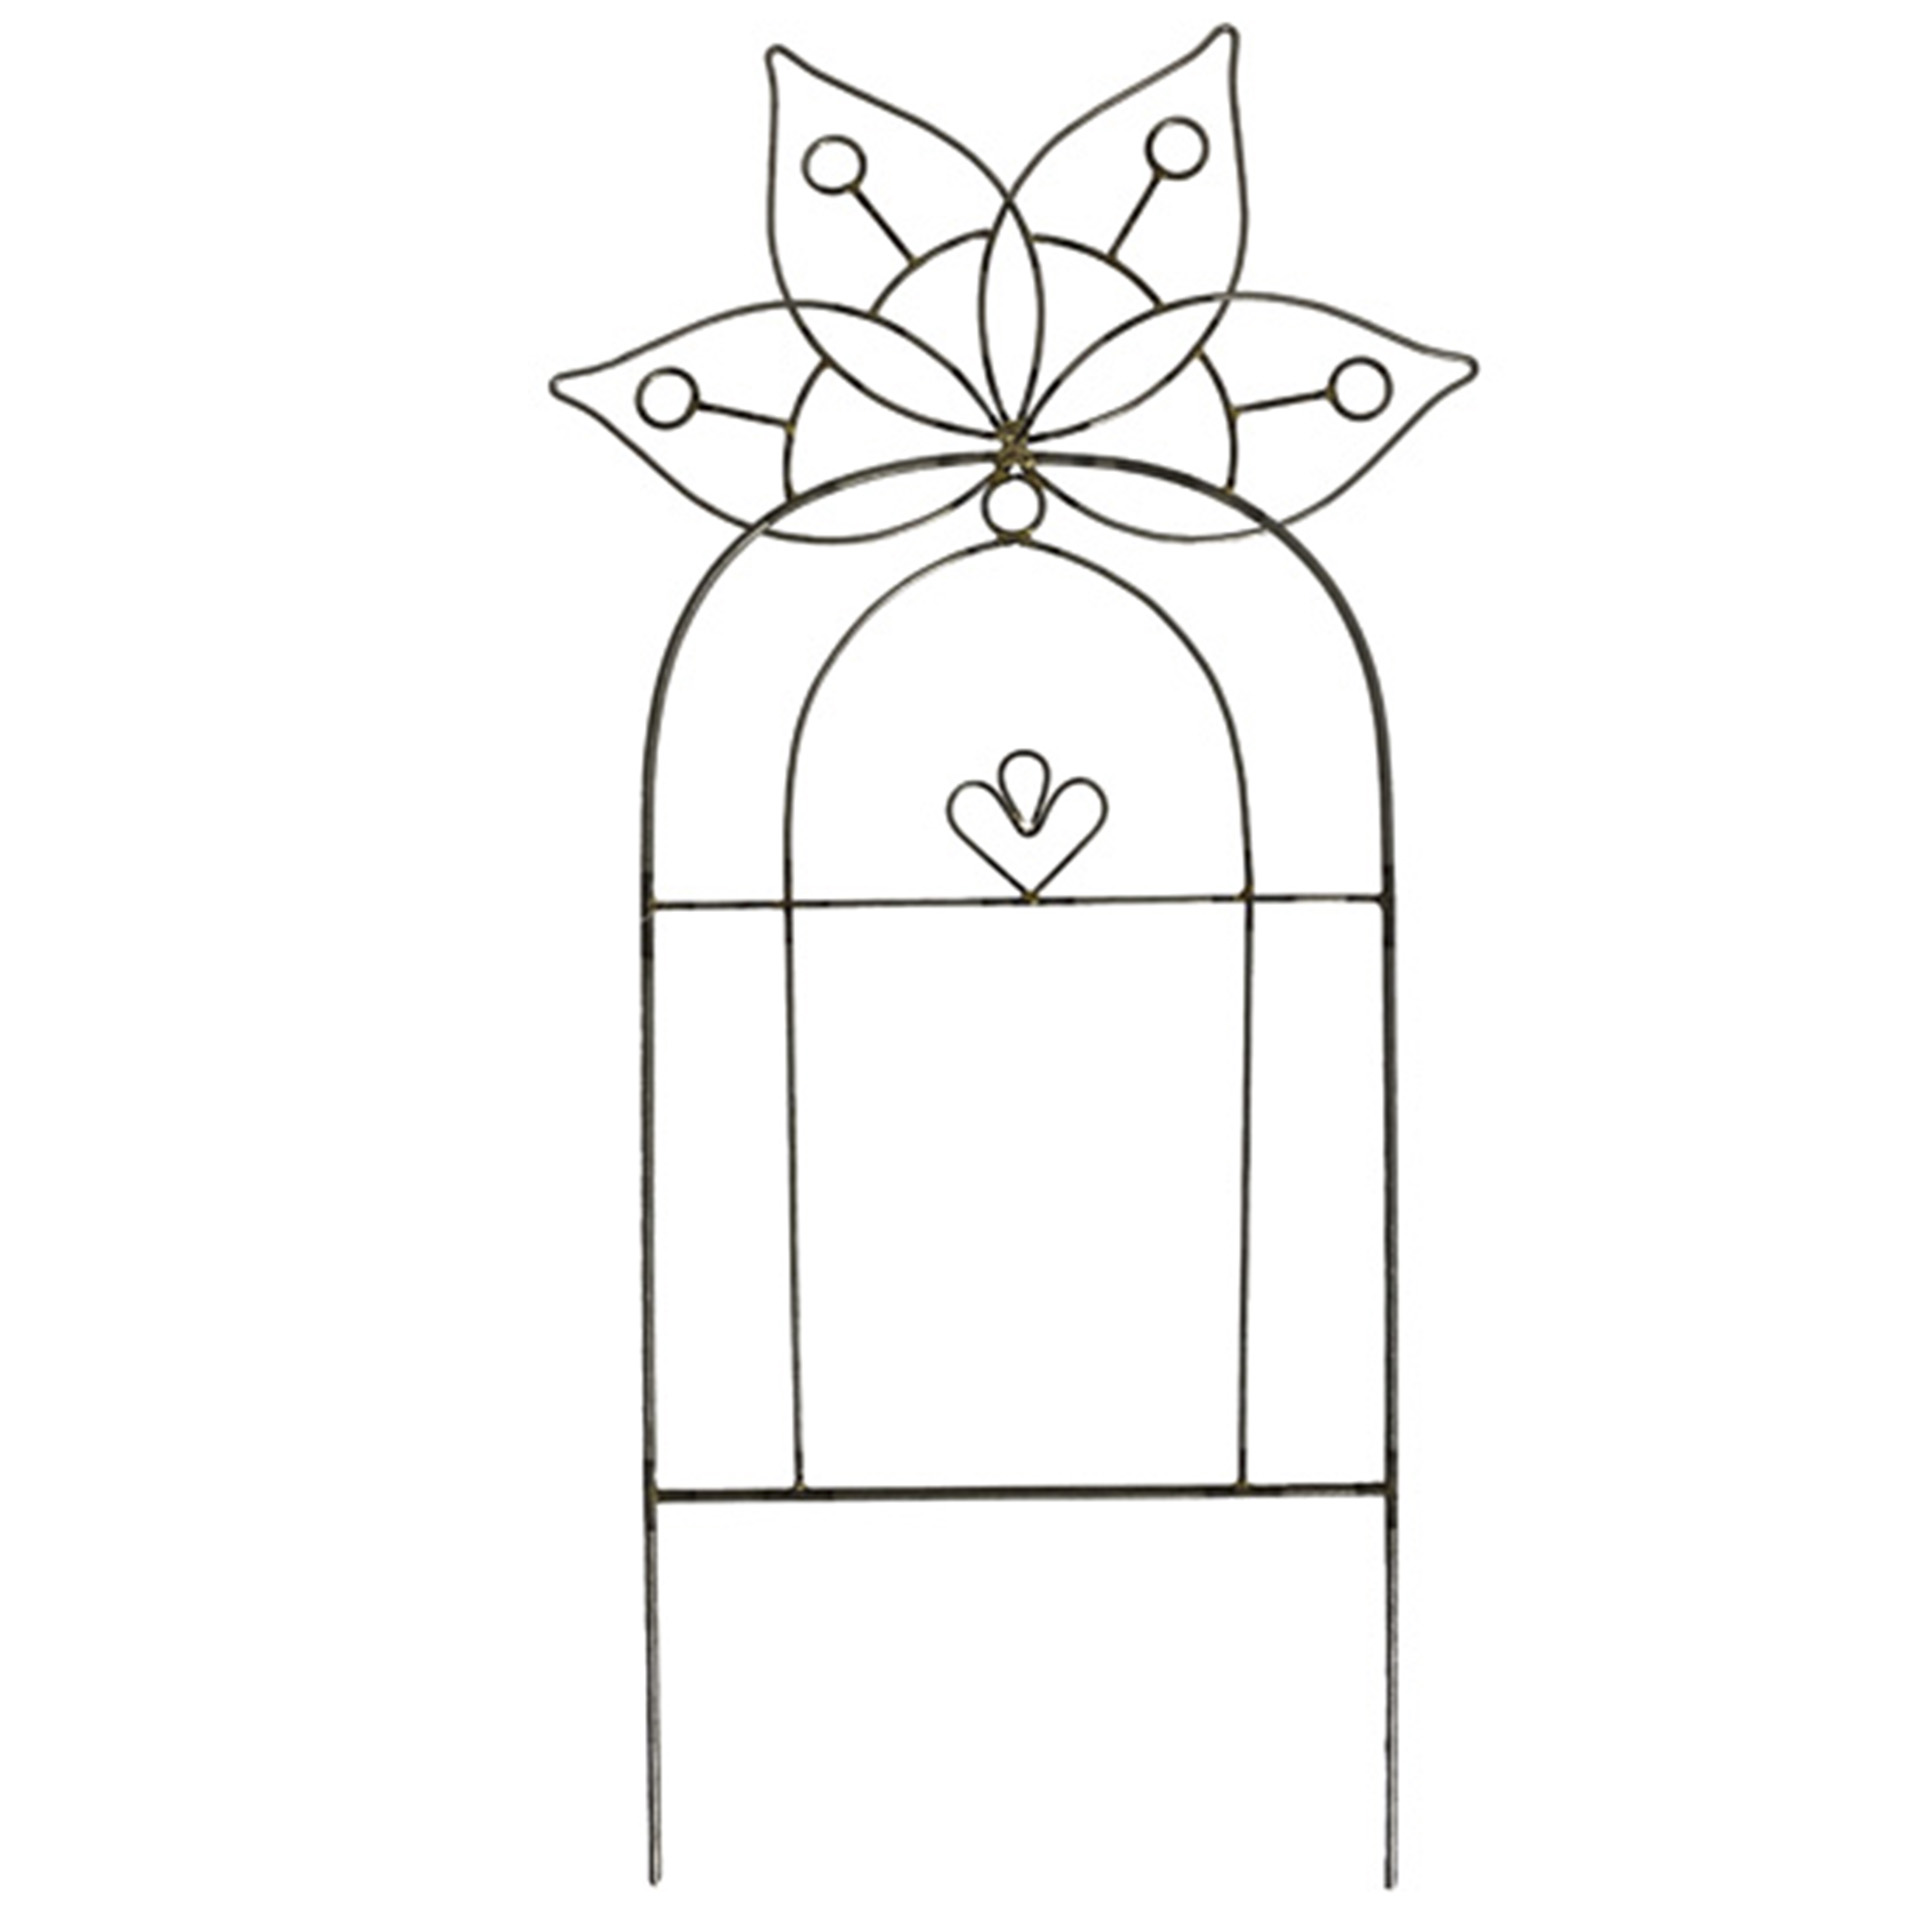 Rankgitter mit Blumenornament am oberen Ende